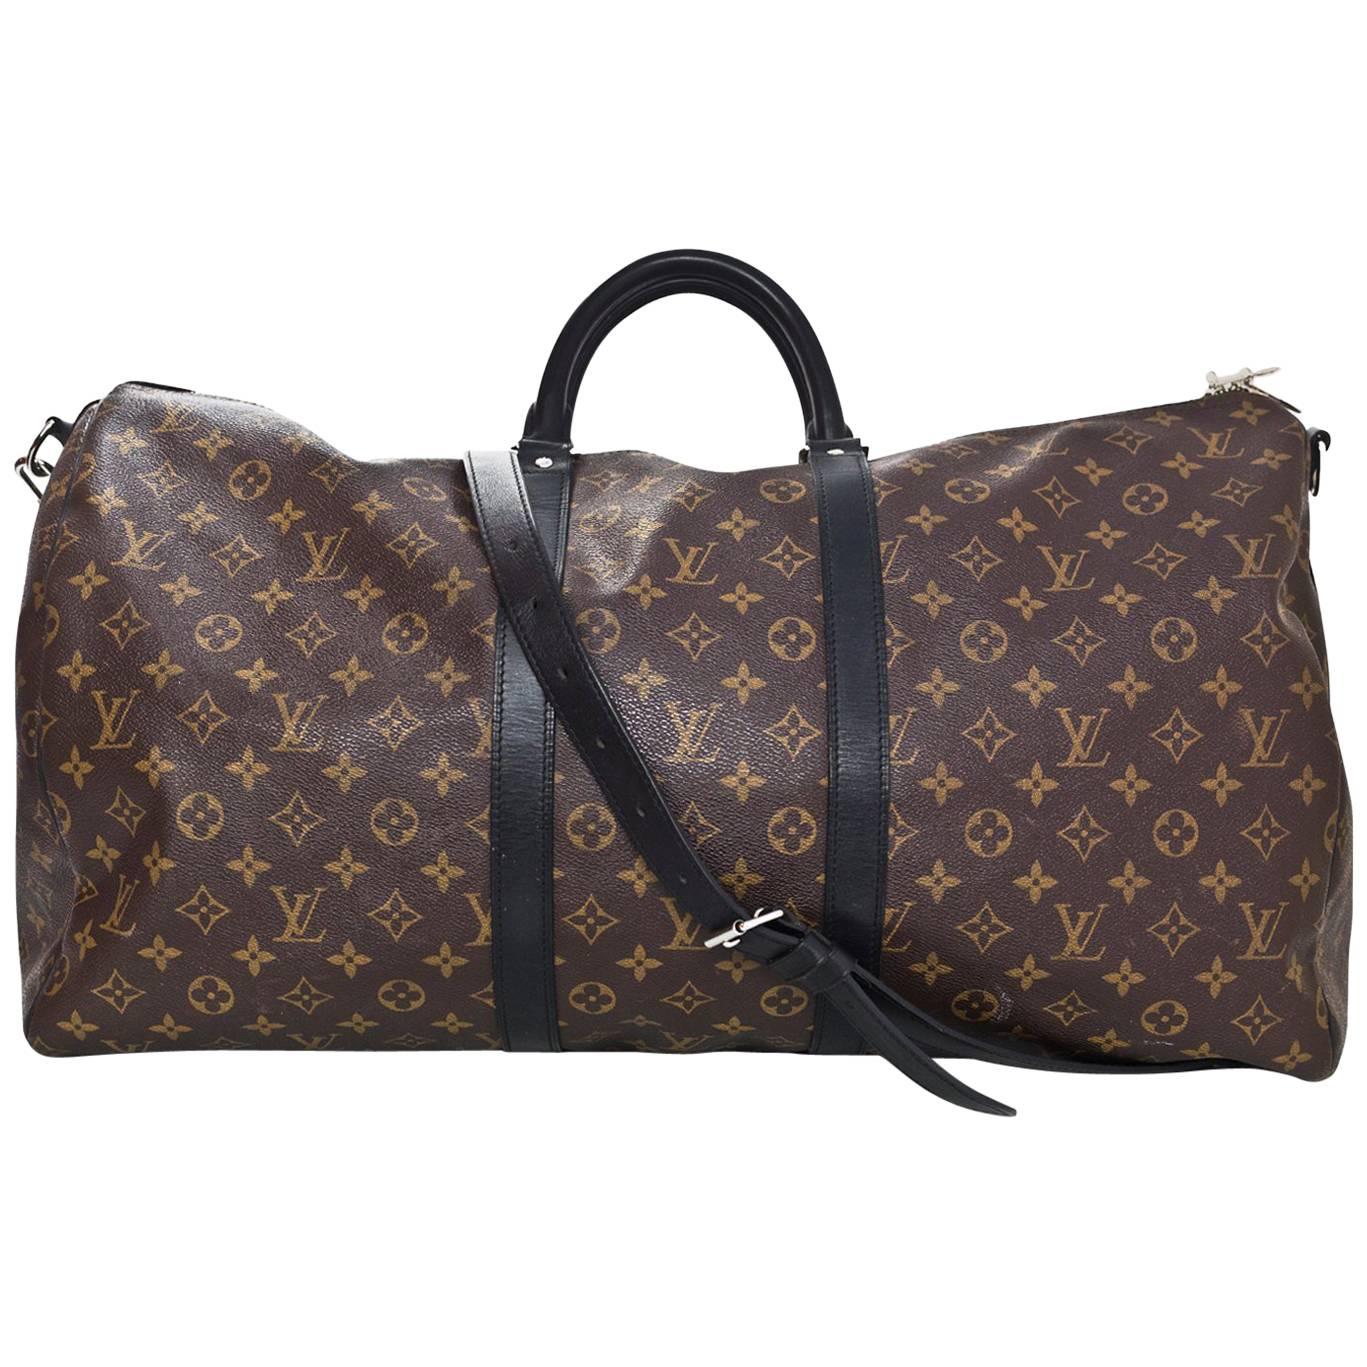 Louis Vuitton Monogram Macassar Keepall Bandouliere 55 Duffle Travel Bag